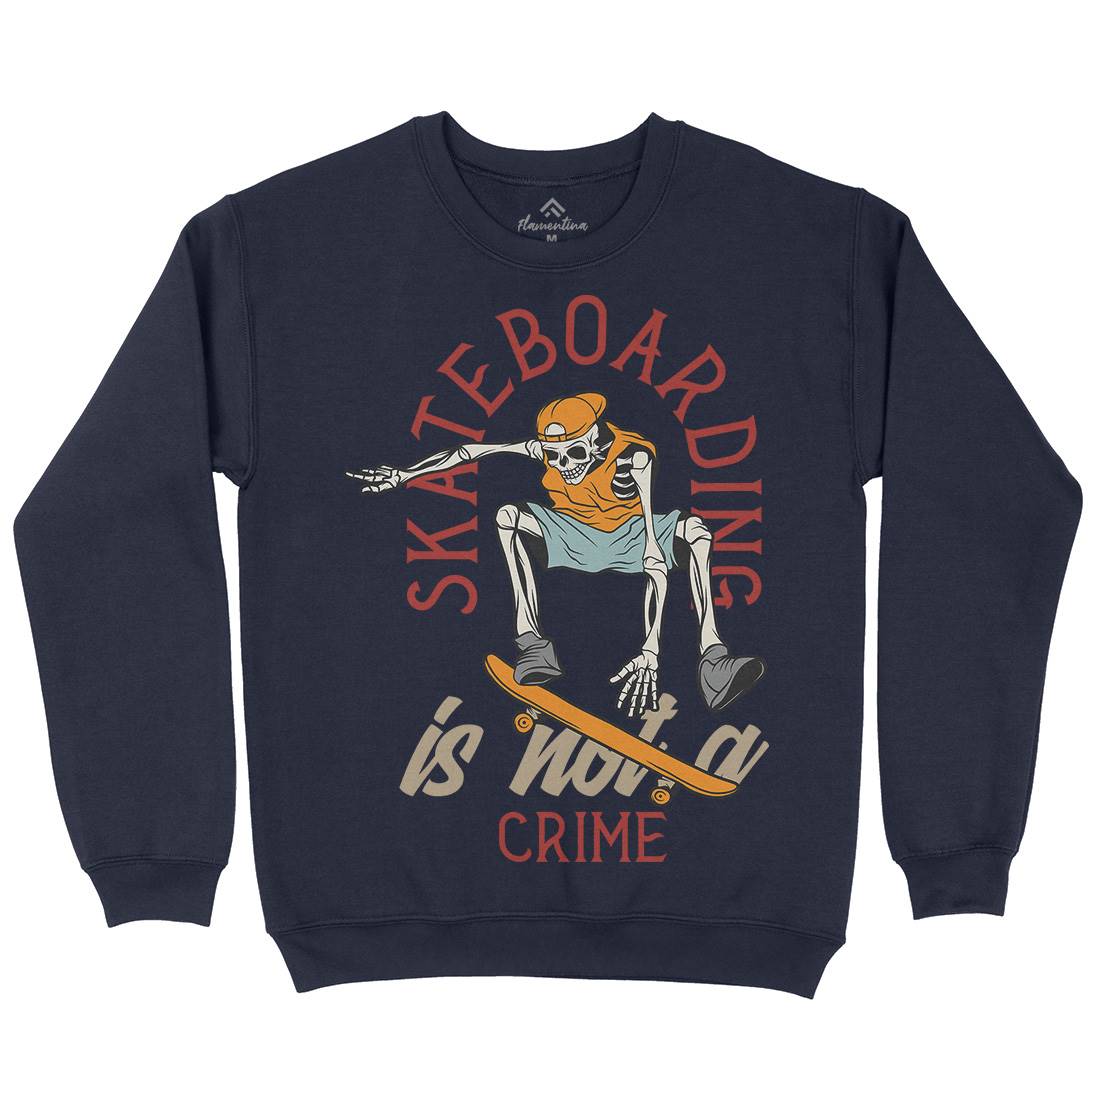 Skateboarding Crime Kids Crew Neck Sweatshirt Skate D975